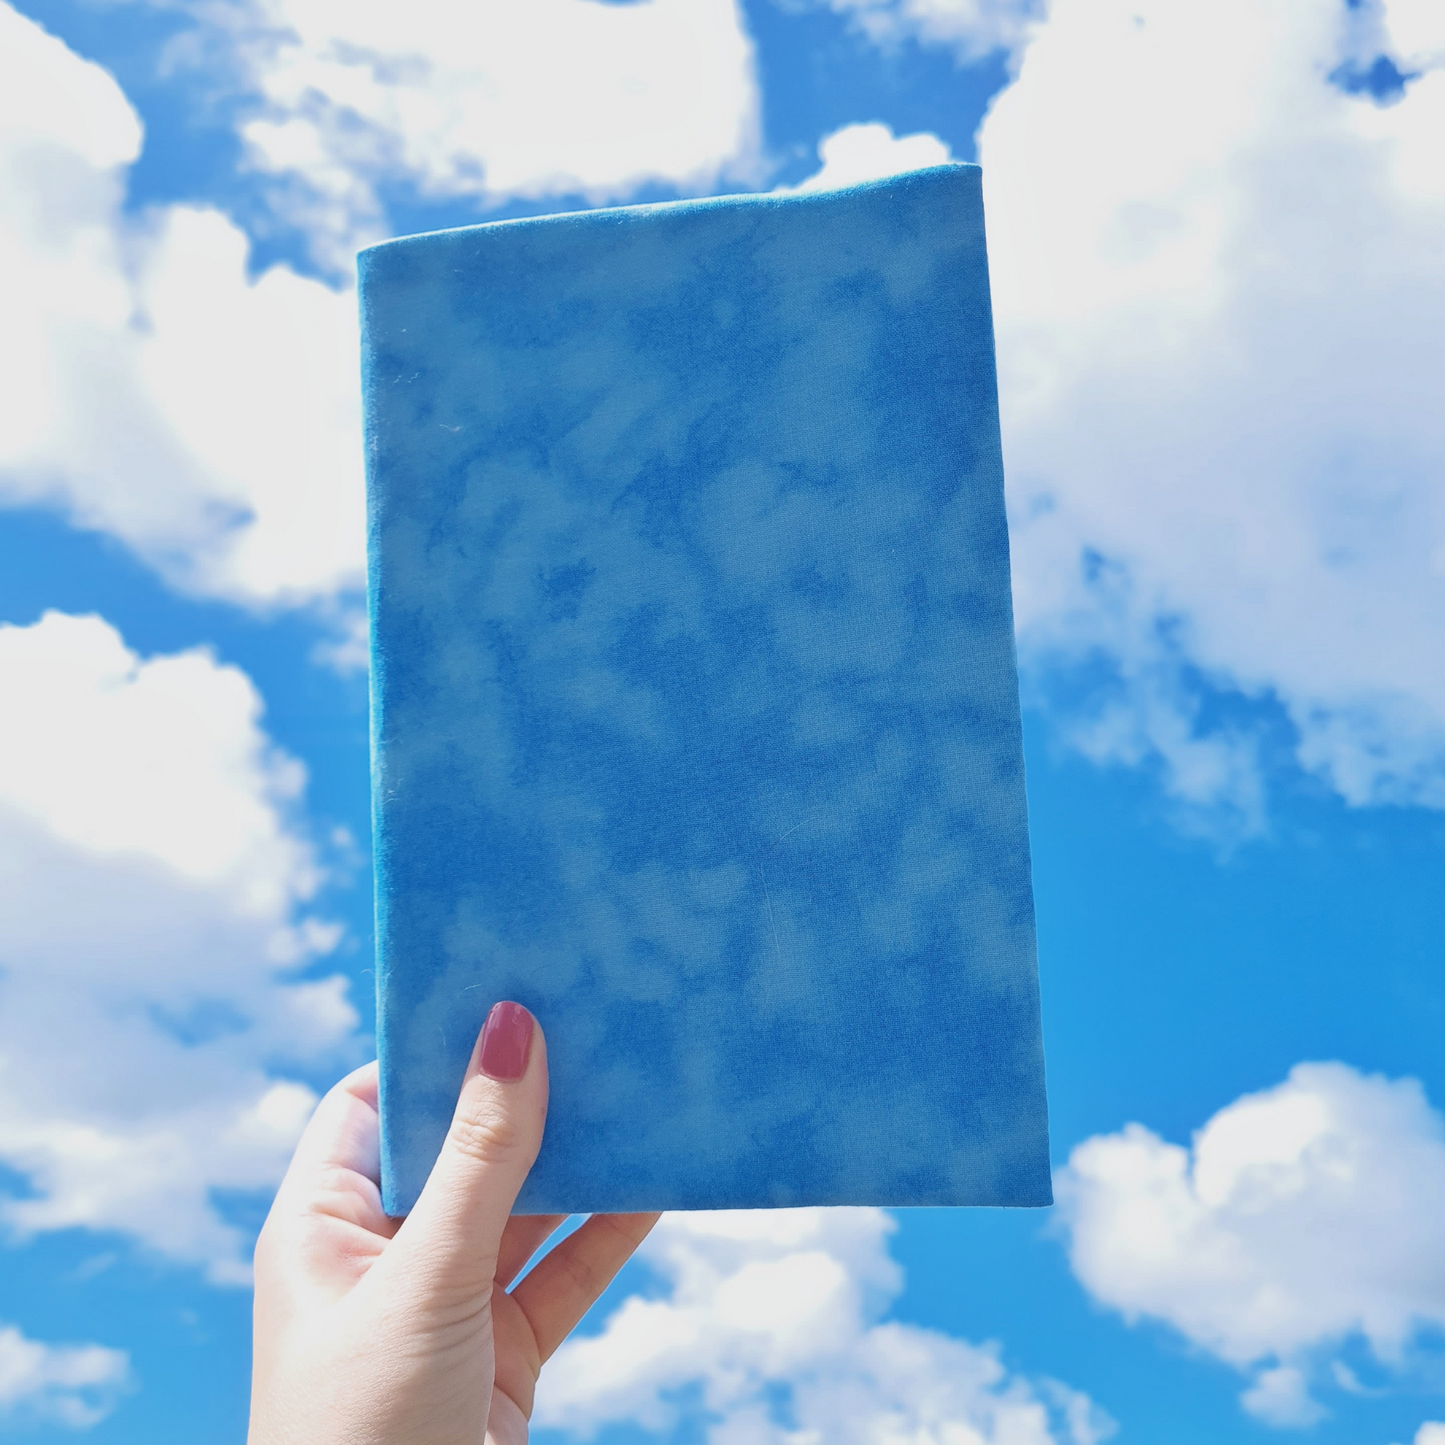 Sky Blue fabric book cover